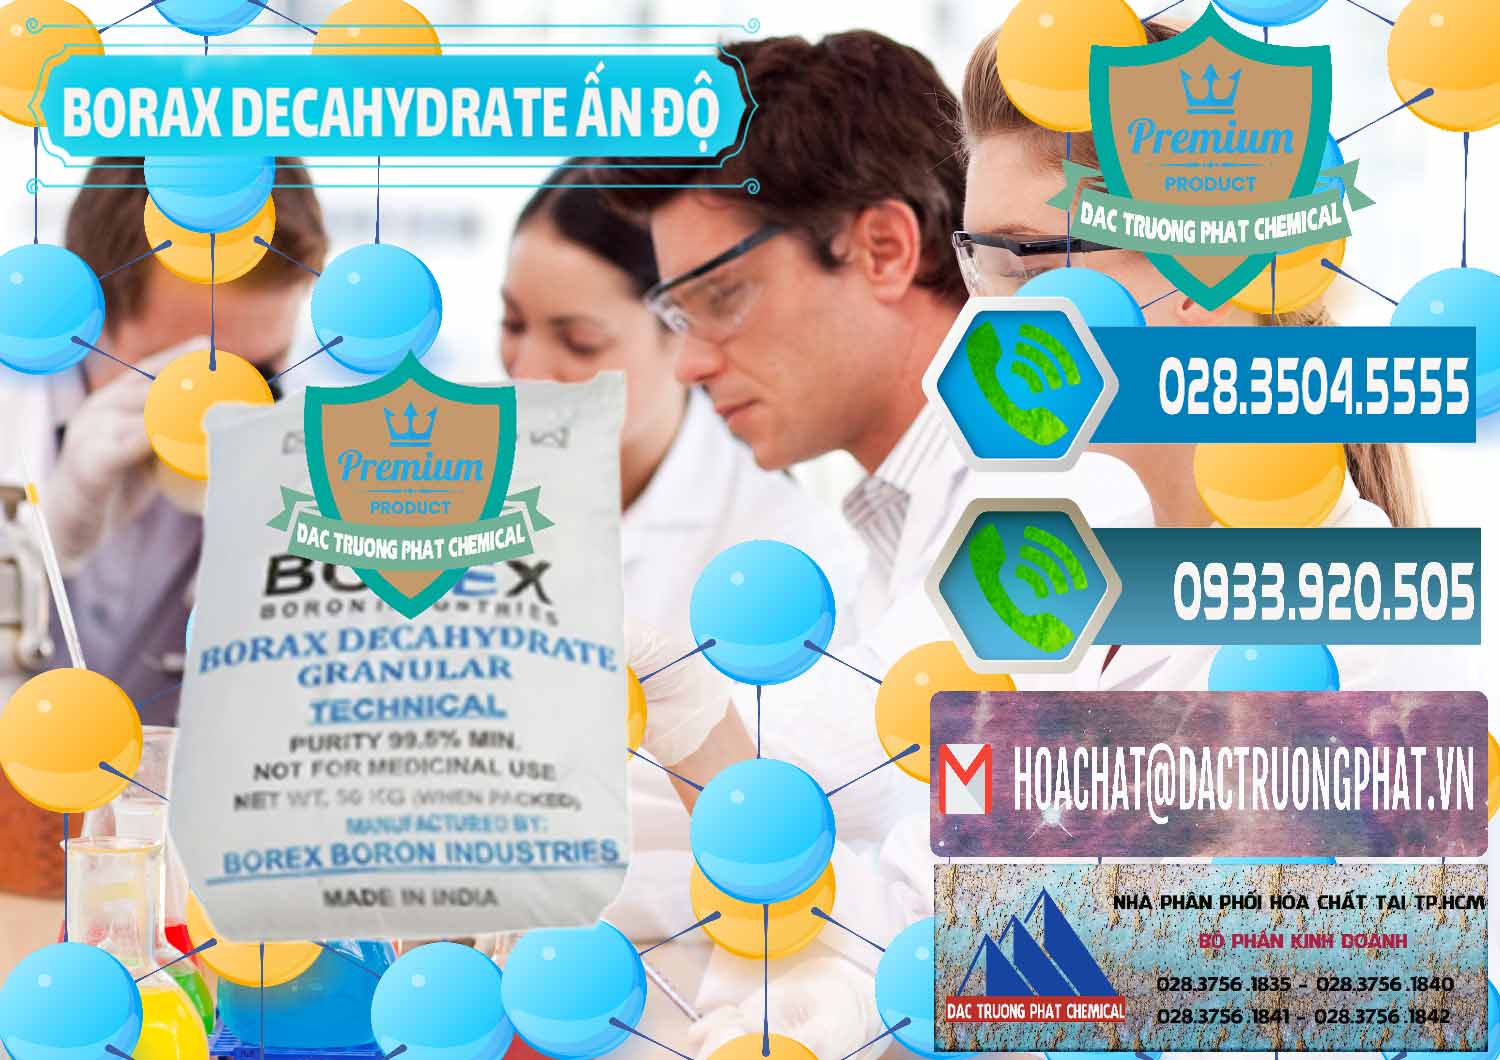 Cty kinh doanh - bán Borax Decahydrate Ấn Độ India - 0449 - Cty chuyên bán _ cung cấp hóa chất tại TP.HCM - congtyhoachat.net